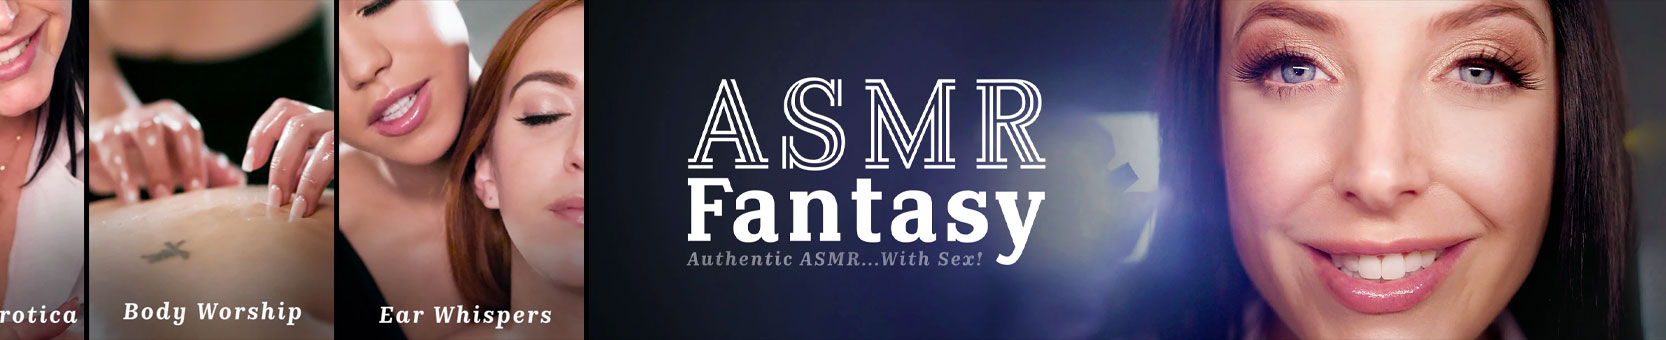 ASMR Fantasy Free Videos